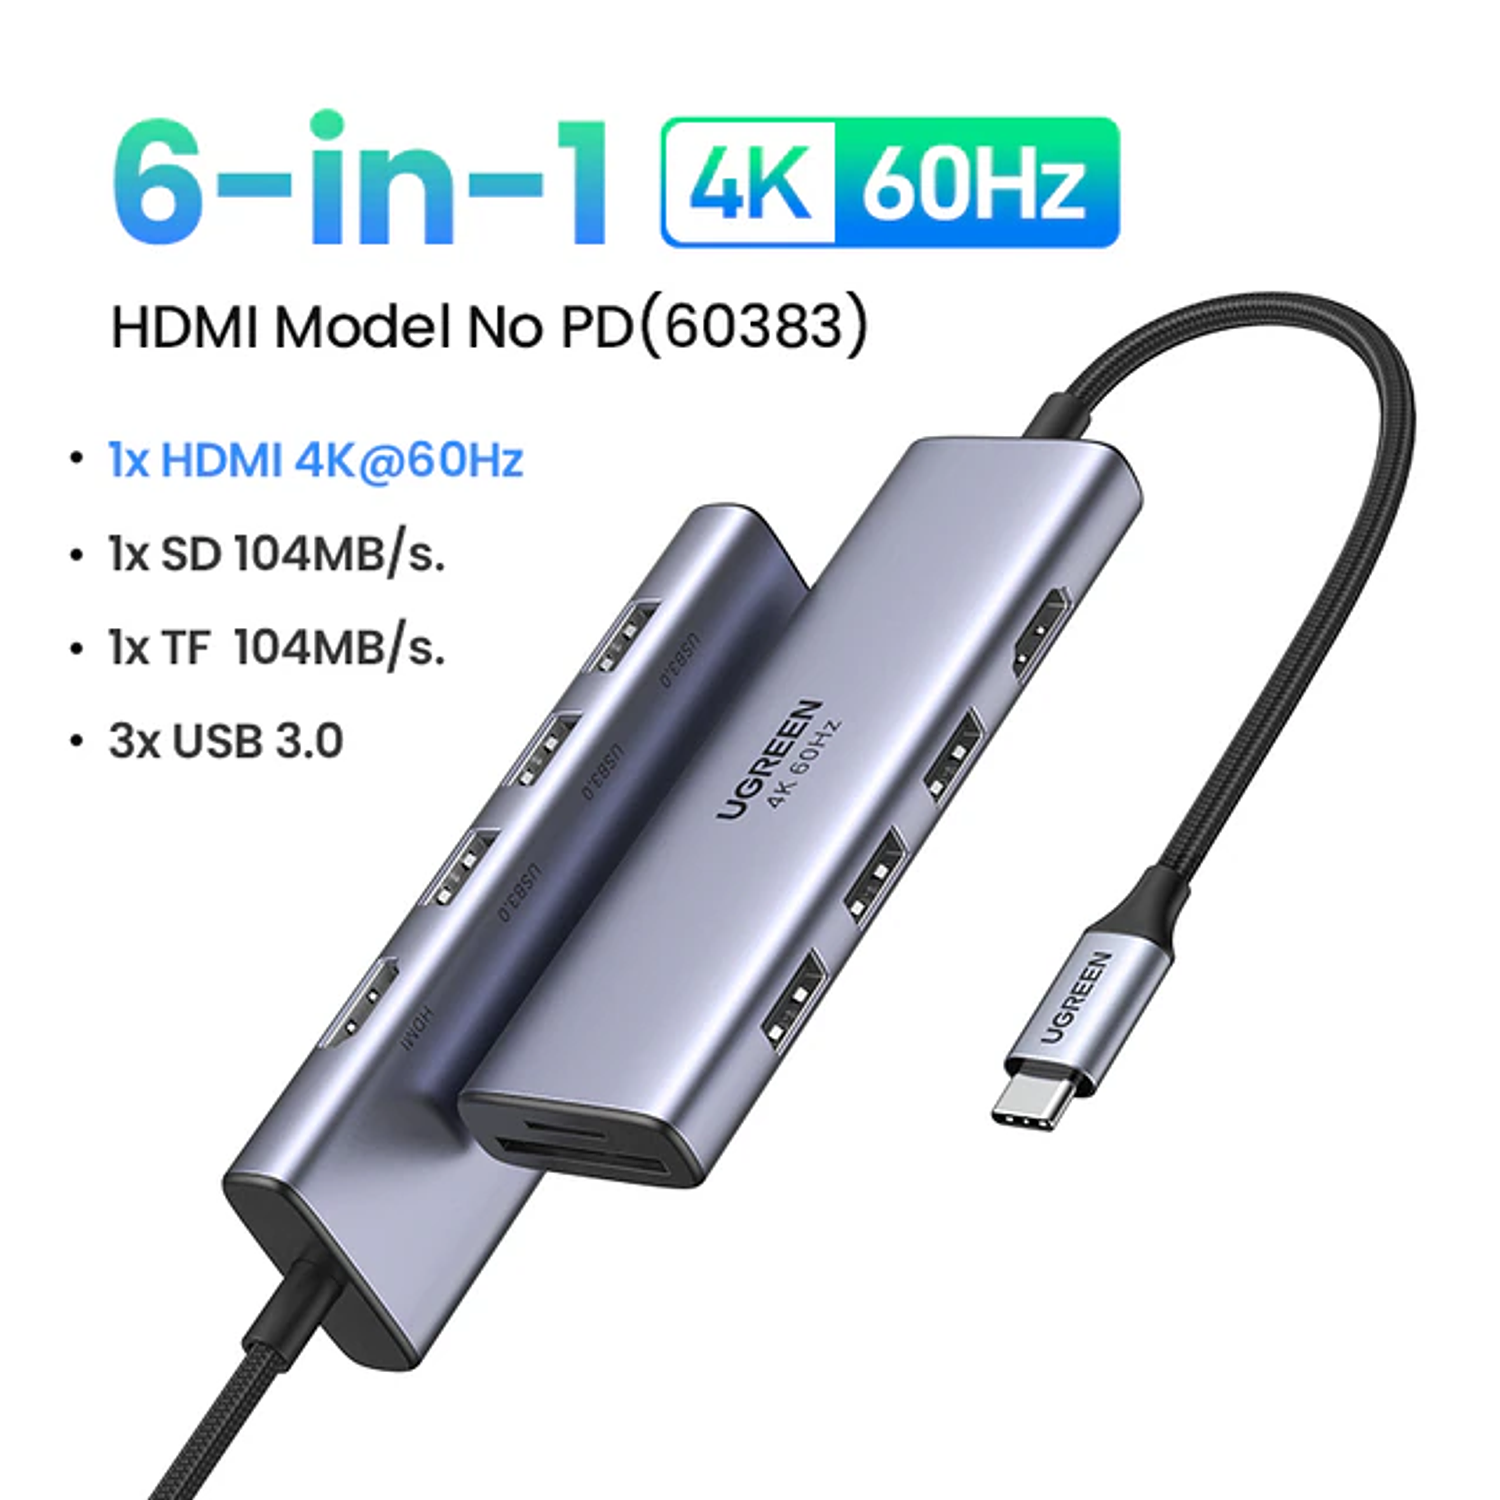 Ripley - ADAPTADOR USB C A DUAL HDMI MULTIPORT USB C HUB PARA